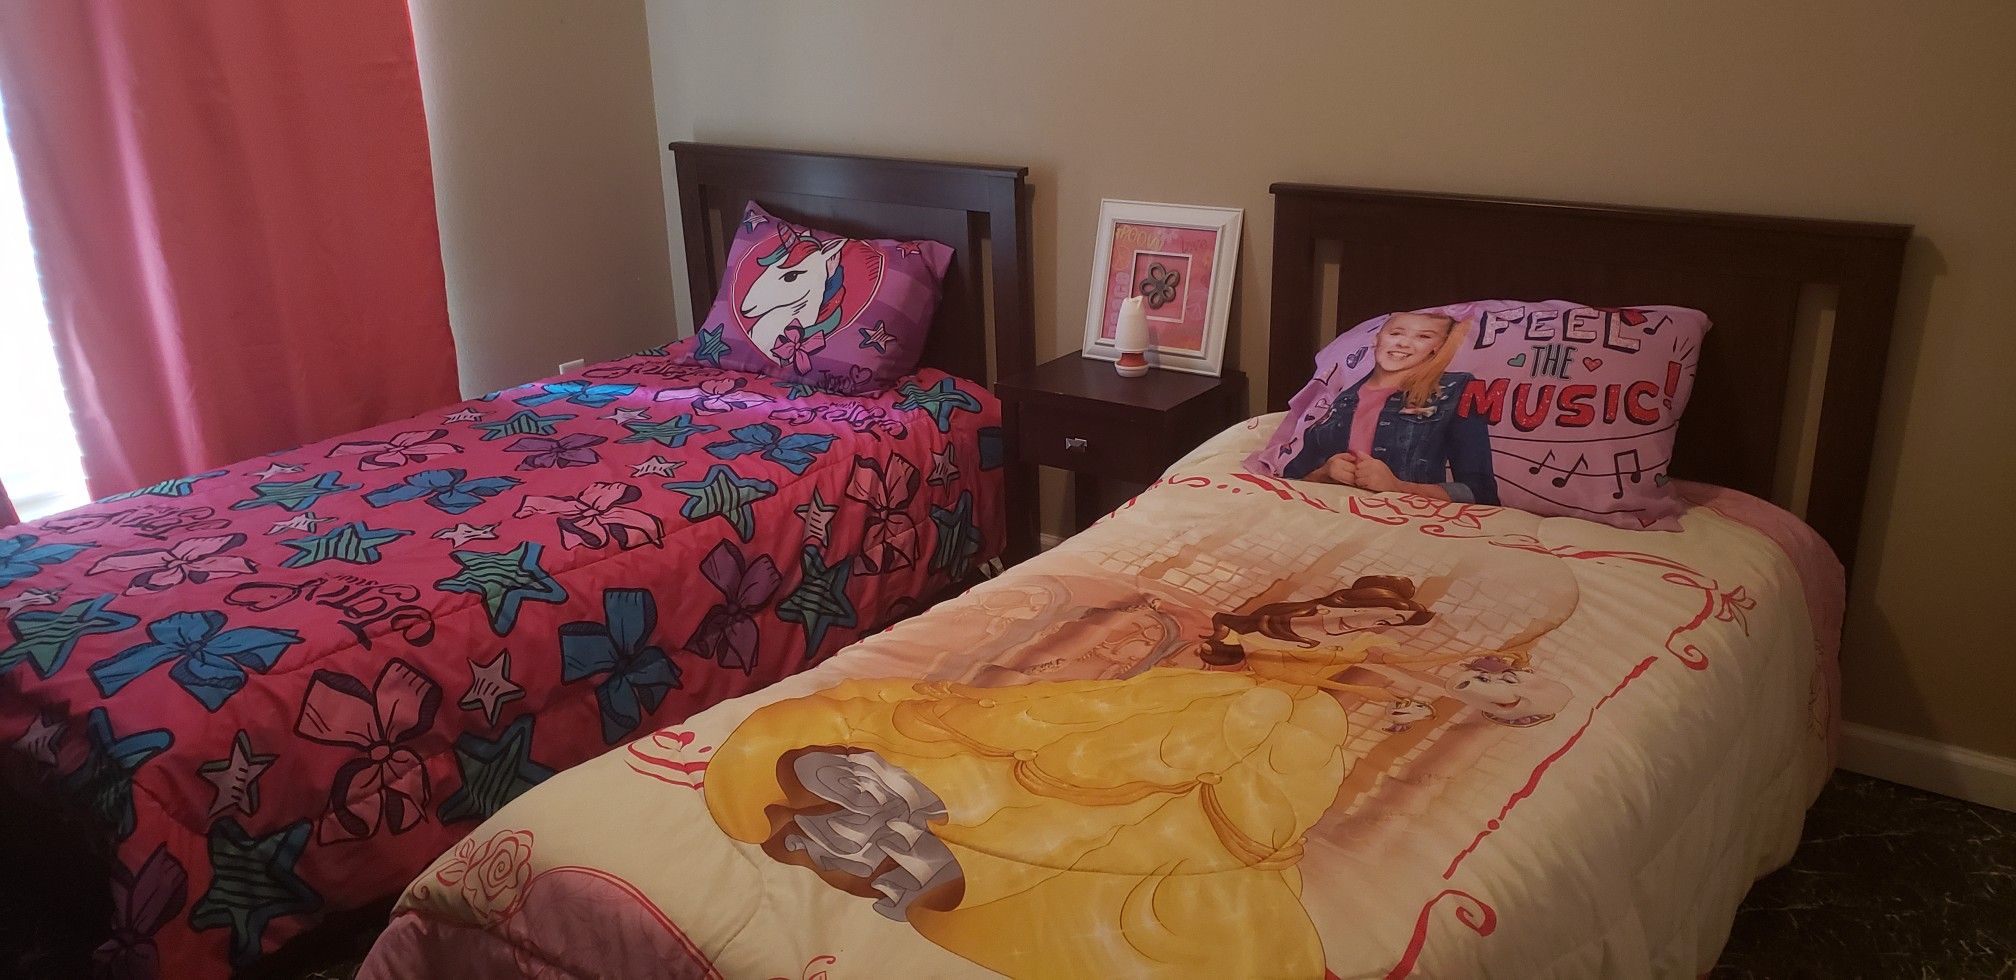 Unique Twin Bed Sets